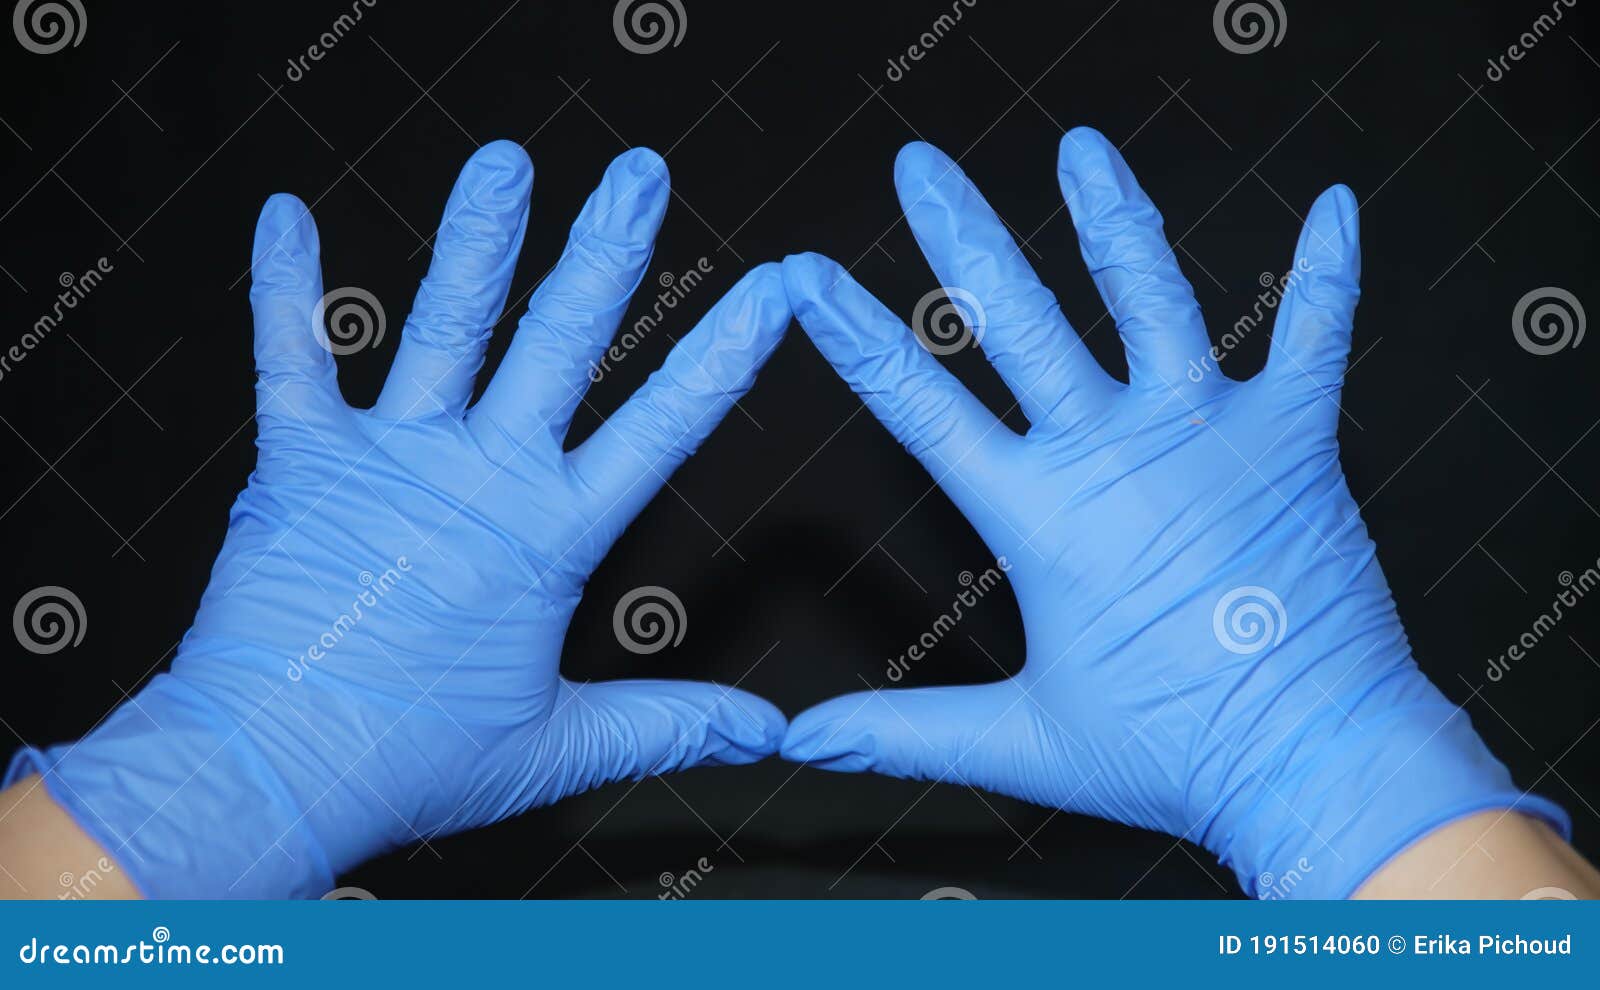 Covid19 δύο χέρια καλυμμένα με μπλε χειρουργικά γάντια με ανοιχτά δάχτυλα  εκτός δείκτη και αντίχειρες σχηματίζοντας ένα τρίγωνο Στοκ Εικόνες - εικόνα  από apalachicola: 191514060